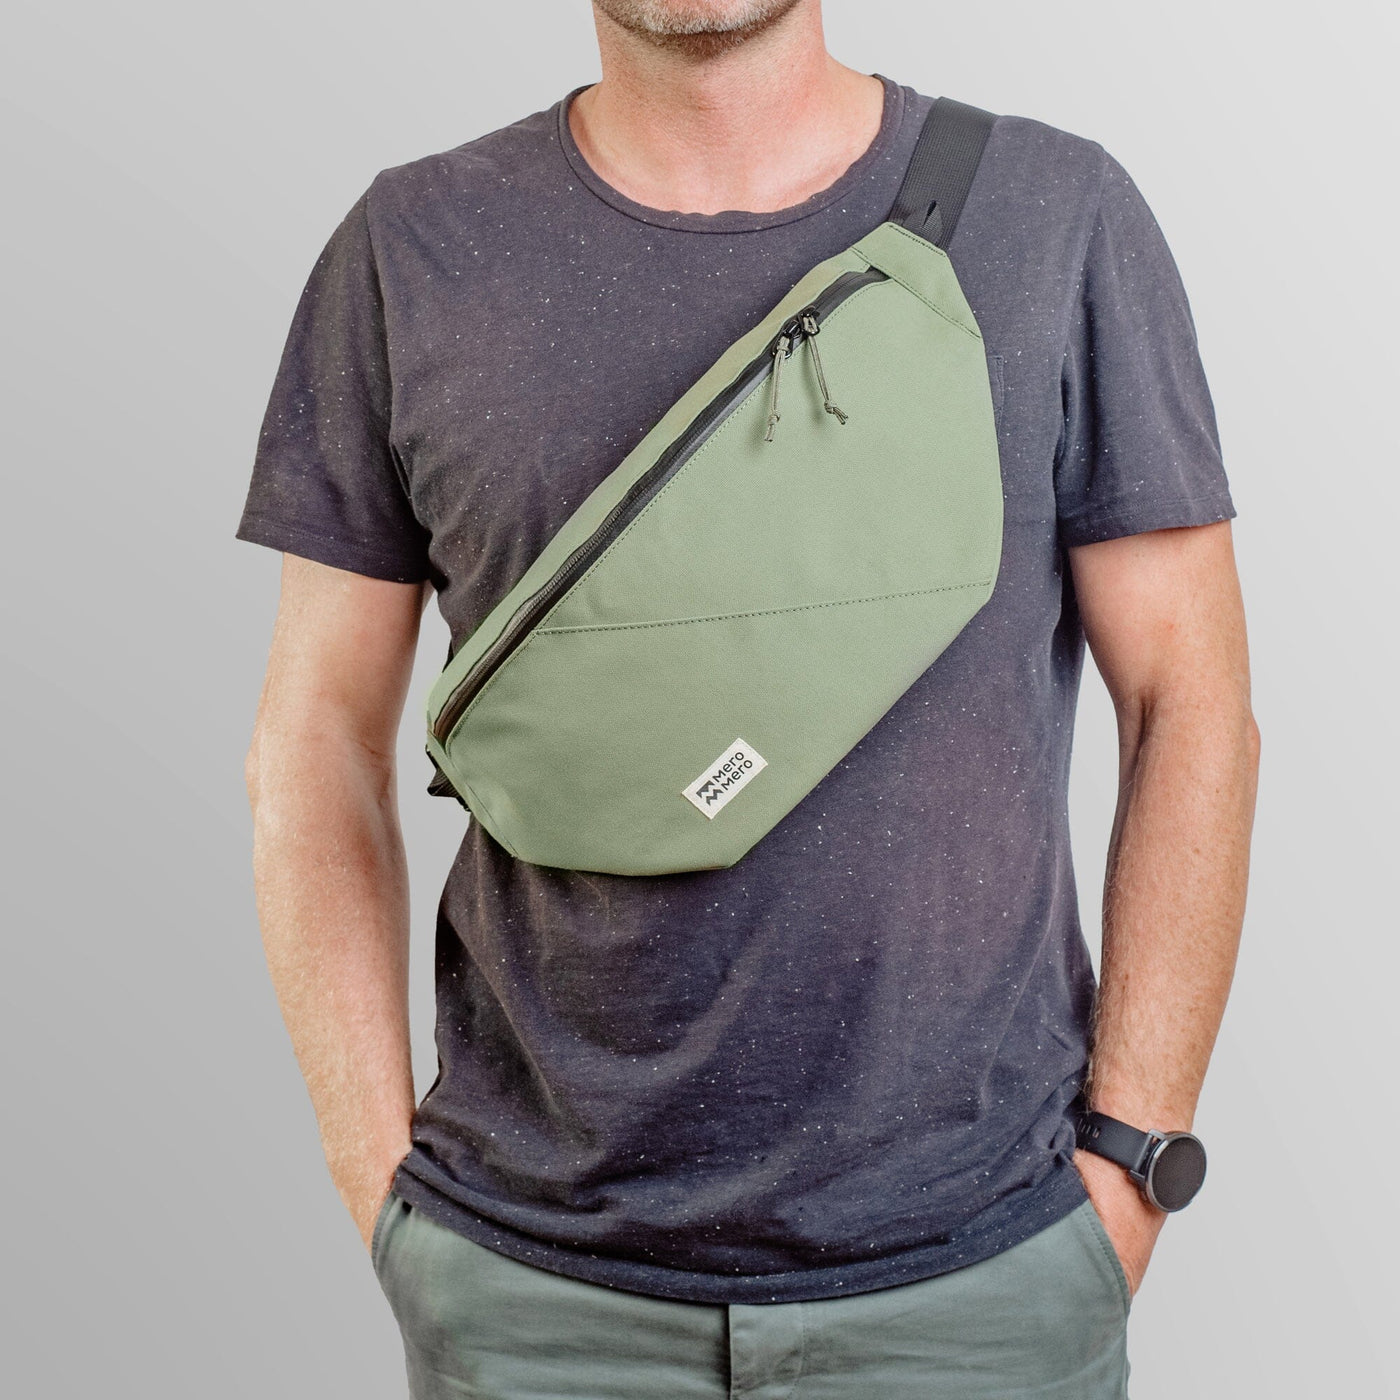 man wearing mero mero hoian recycled bum bag as cross body bag